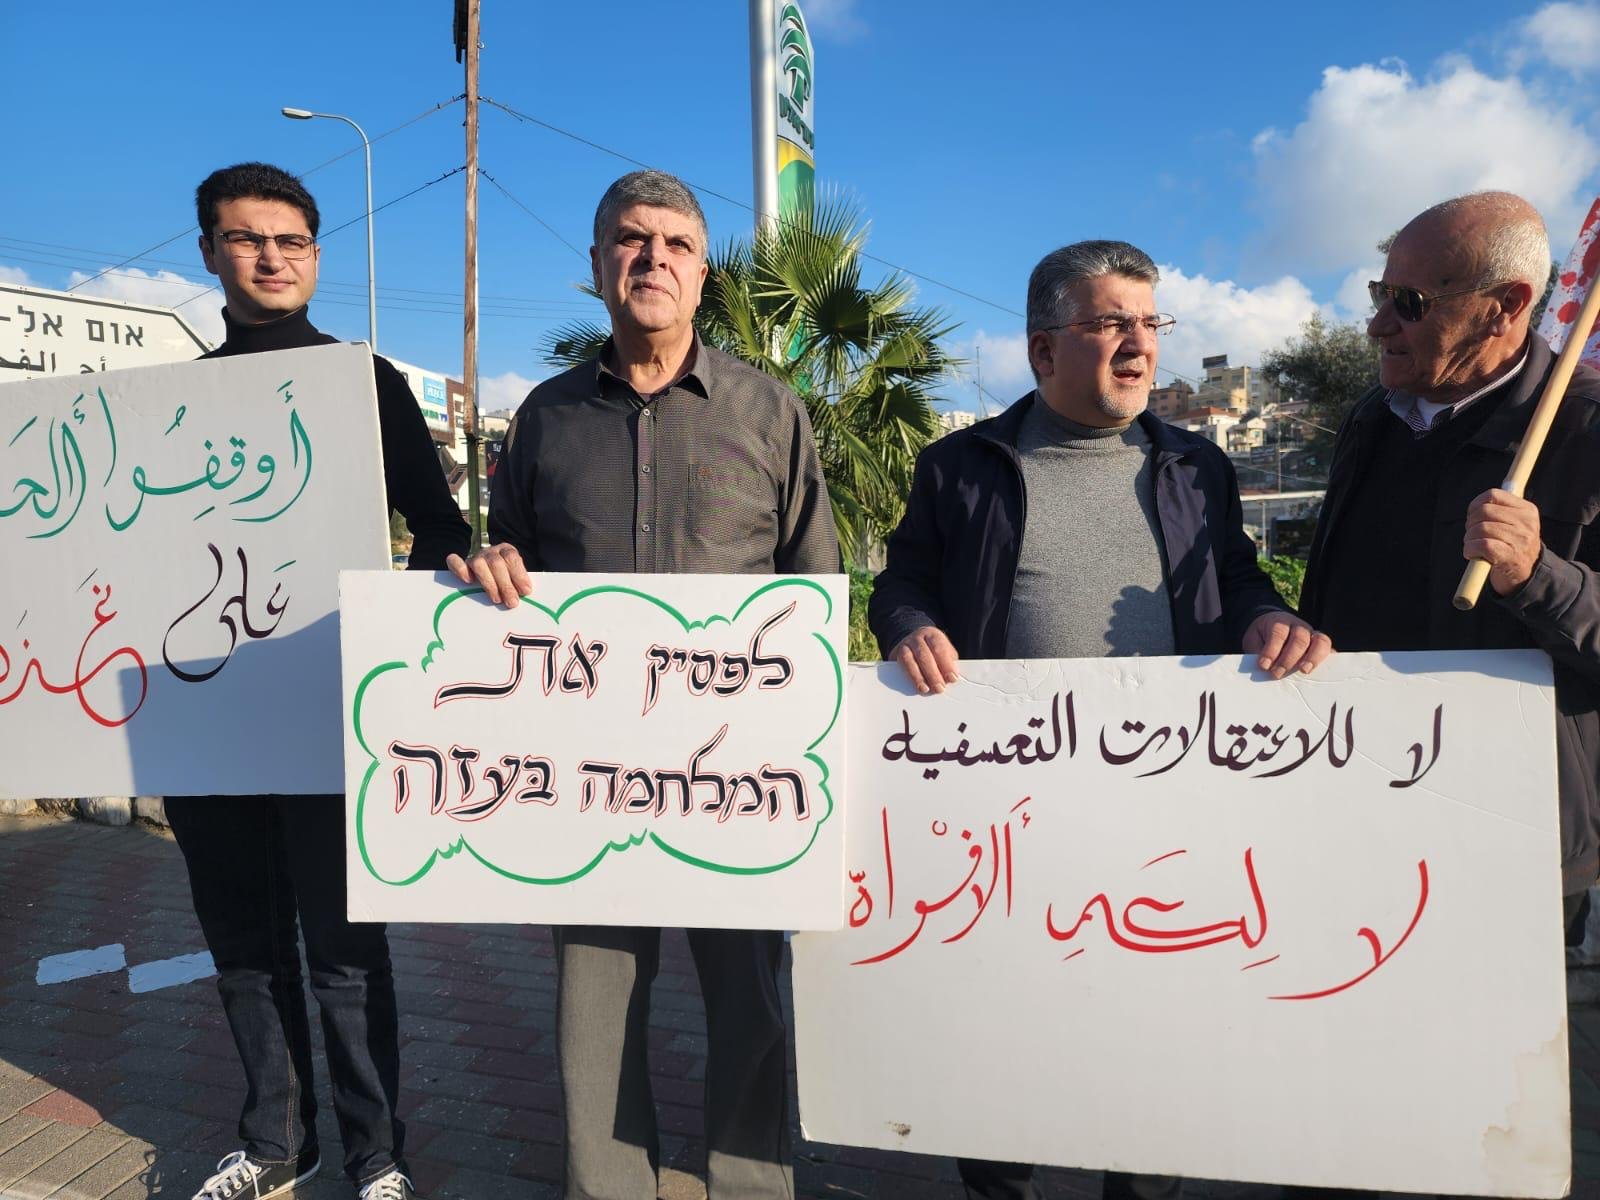 وقفة احتجاجية في مدخل ام الفحم ضد الحرب على غزة بمبادرة الجبهة والحزب الشيوعي في ام الفحم-1